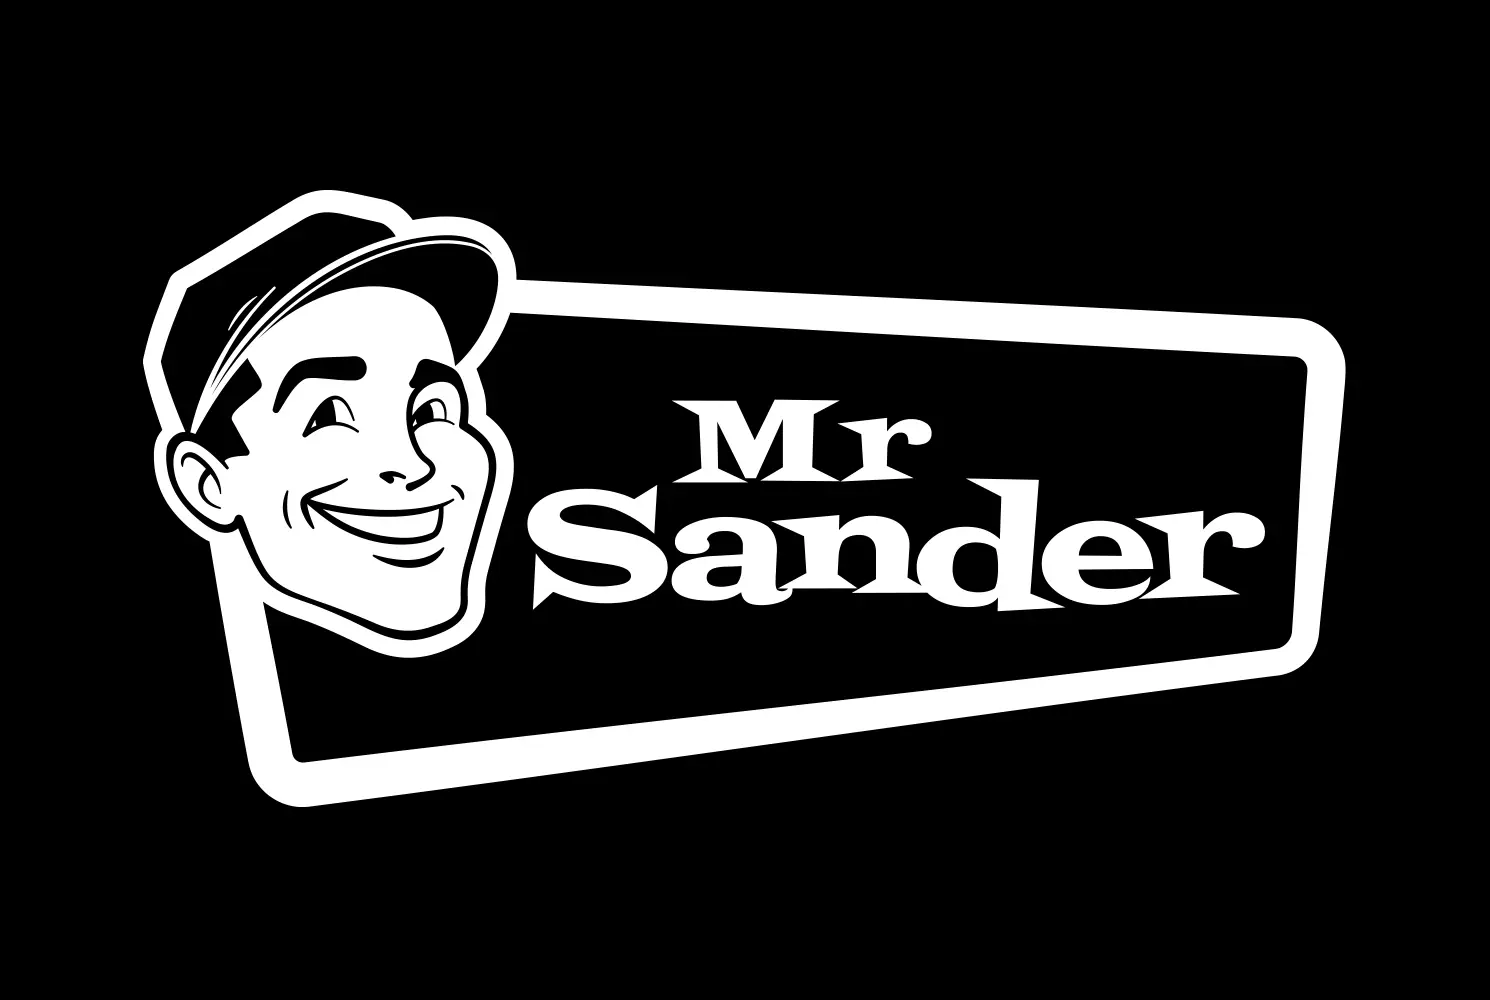 Mr Sander solid white logo on black background